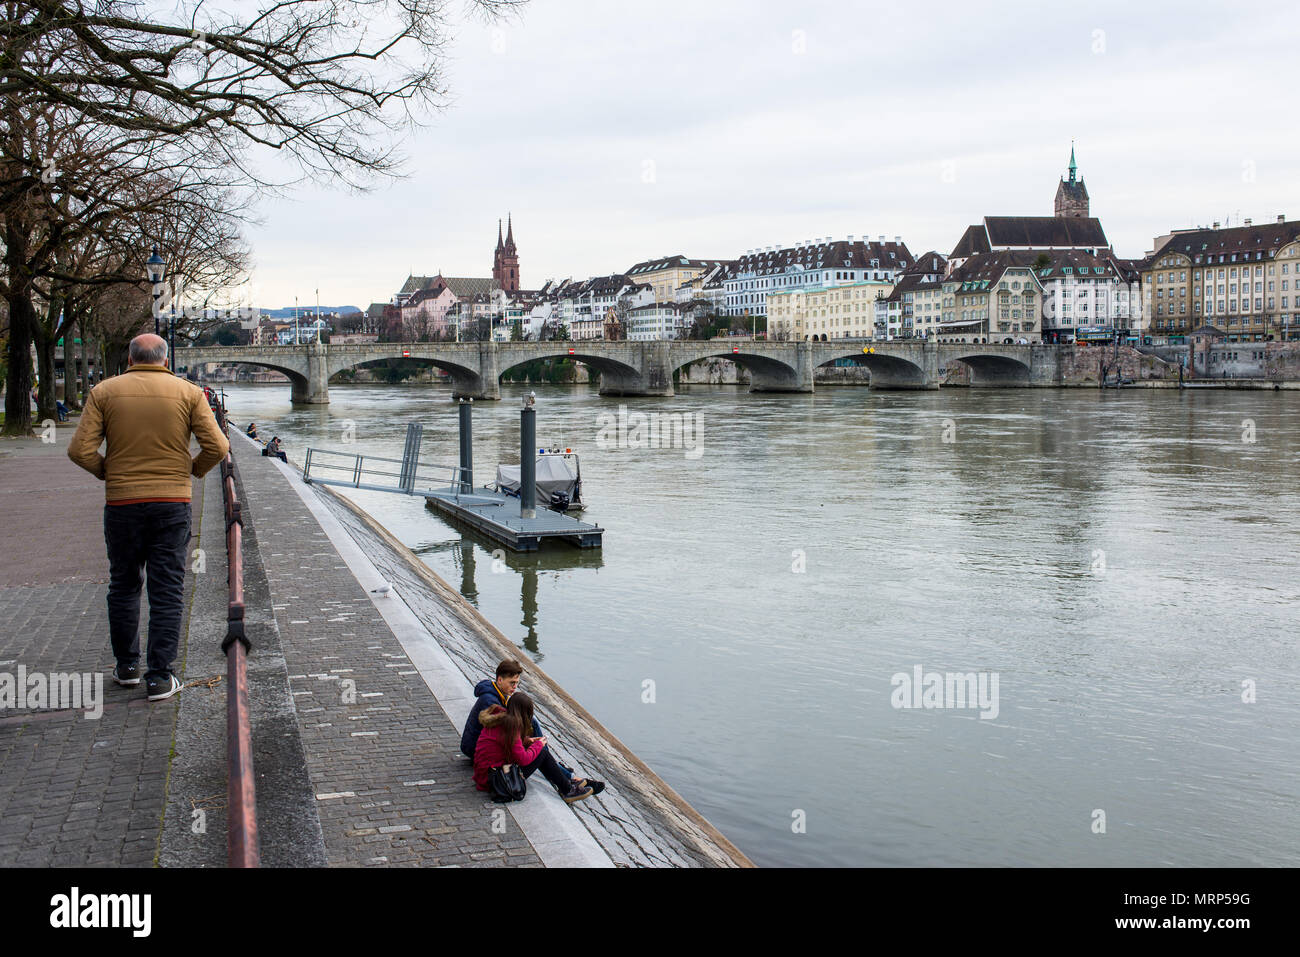 Sur les gens d'en face du fleuve de Bâle Bâle Altstadt (vieille ville) sur le trottoir le long du Rhin. Banque D'Images